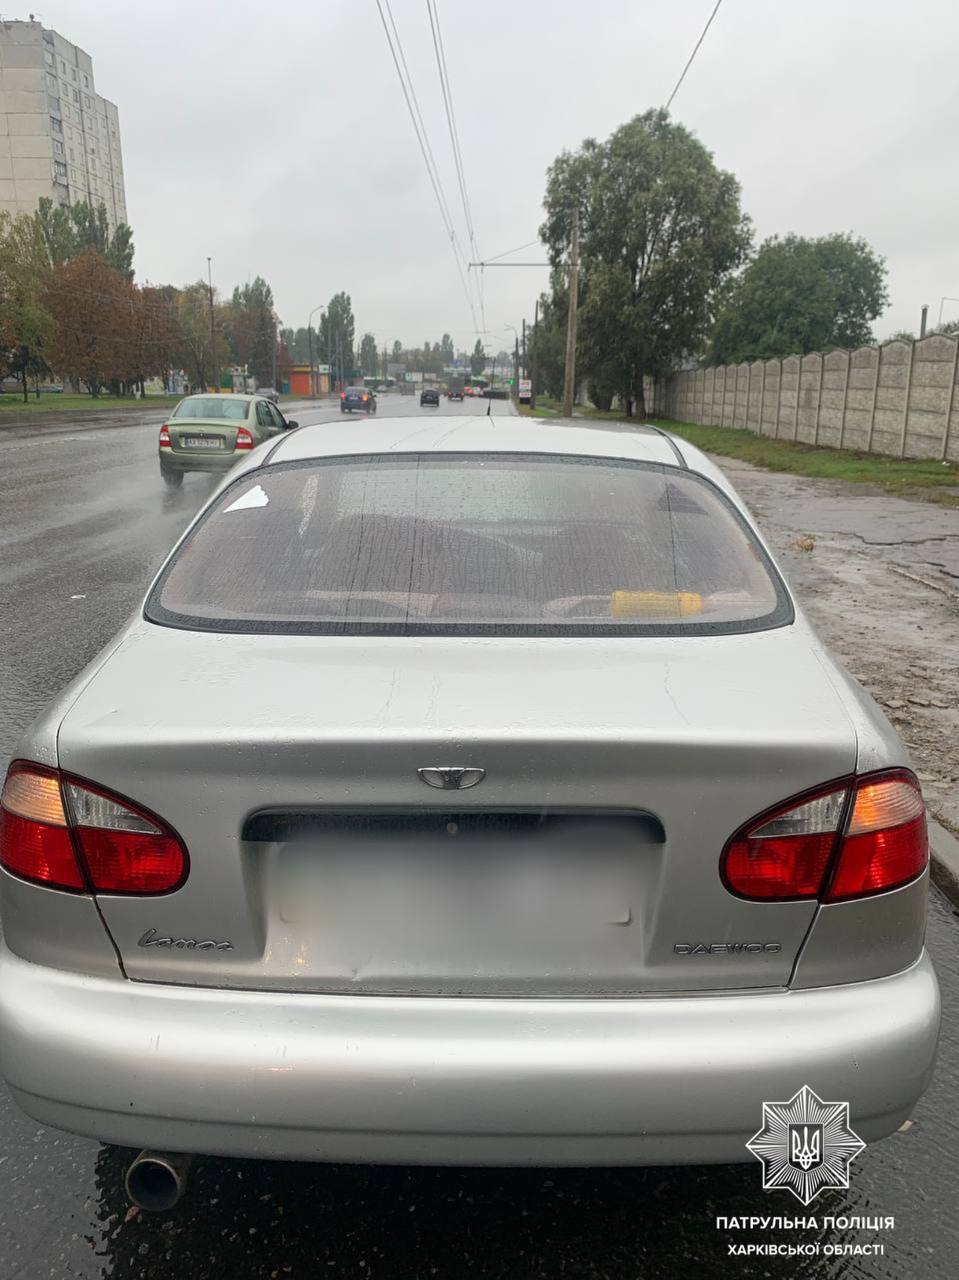 Харківські патрульні знайшли викрадену автівку